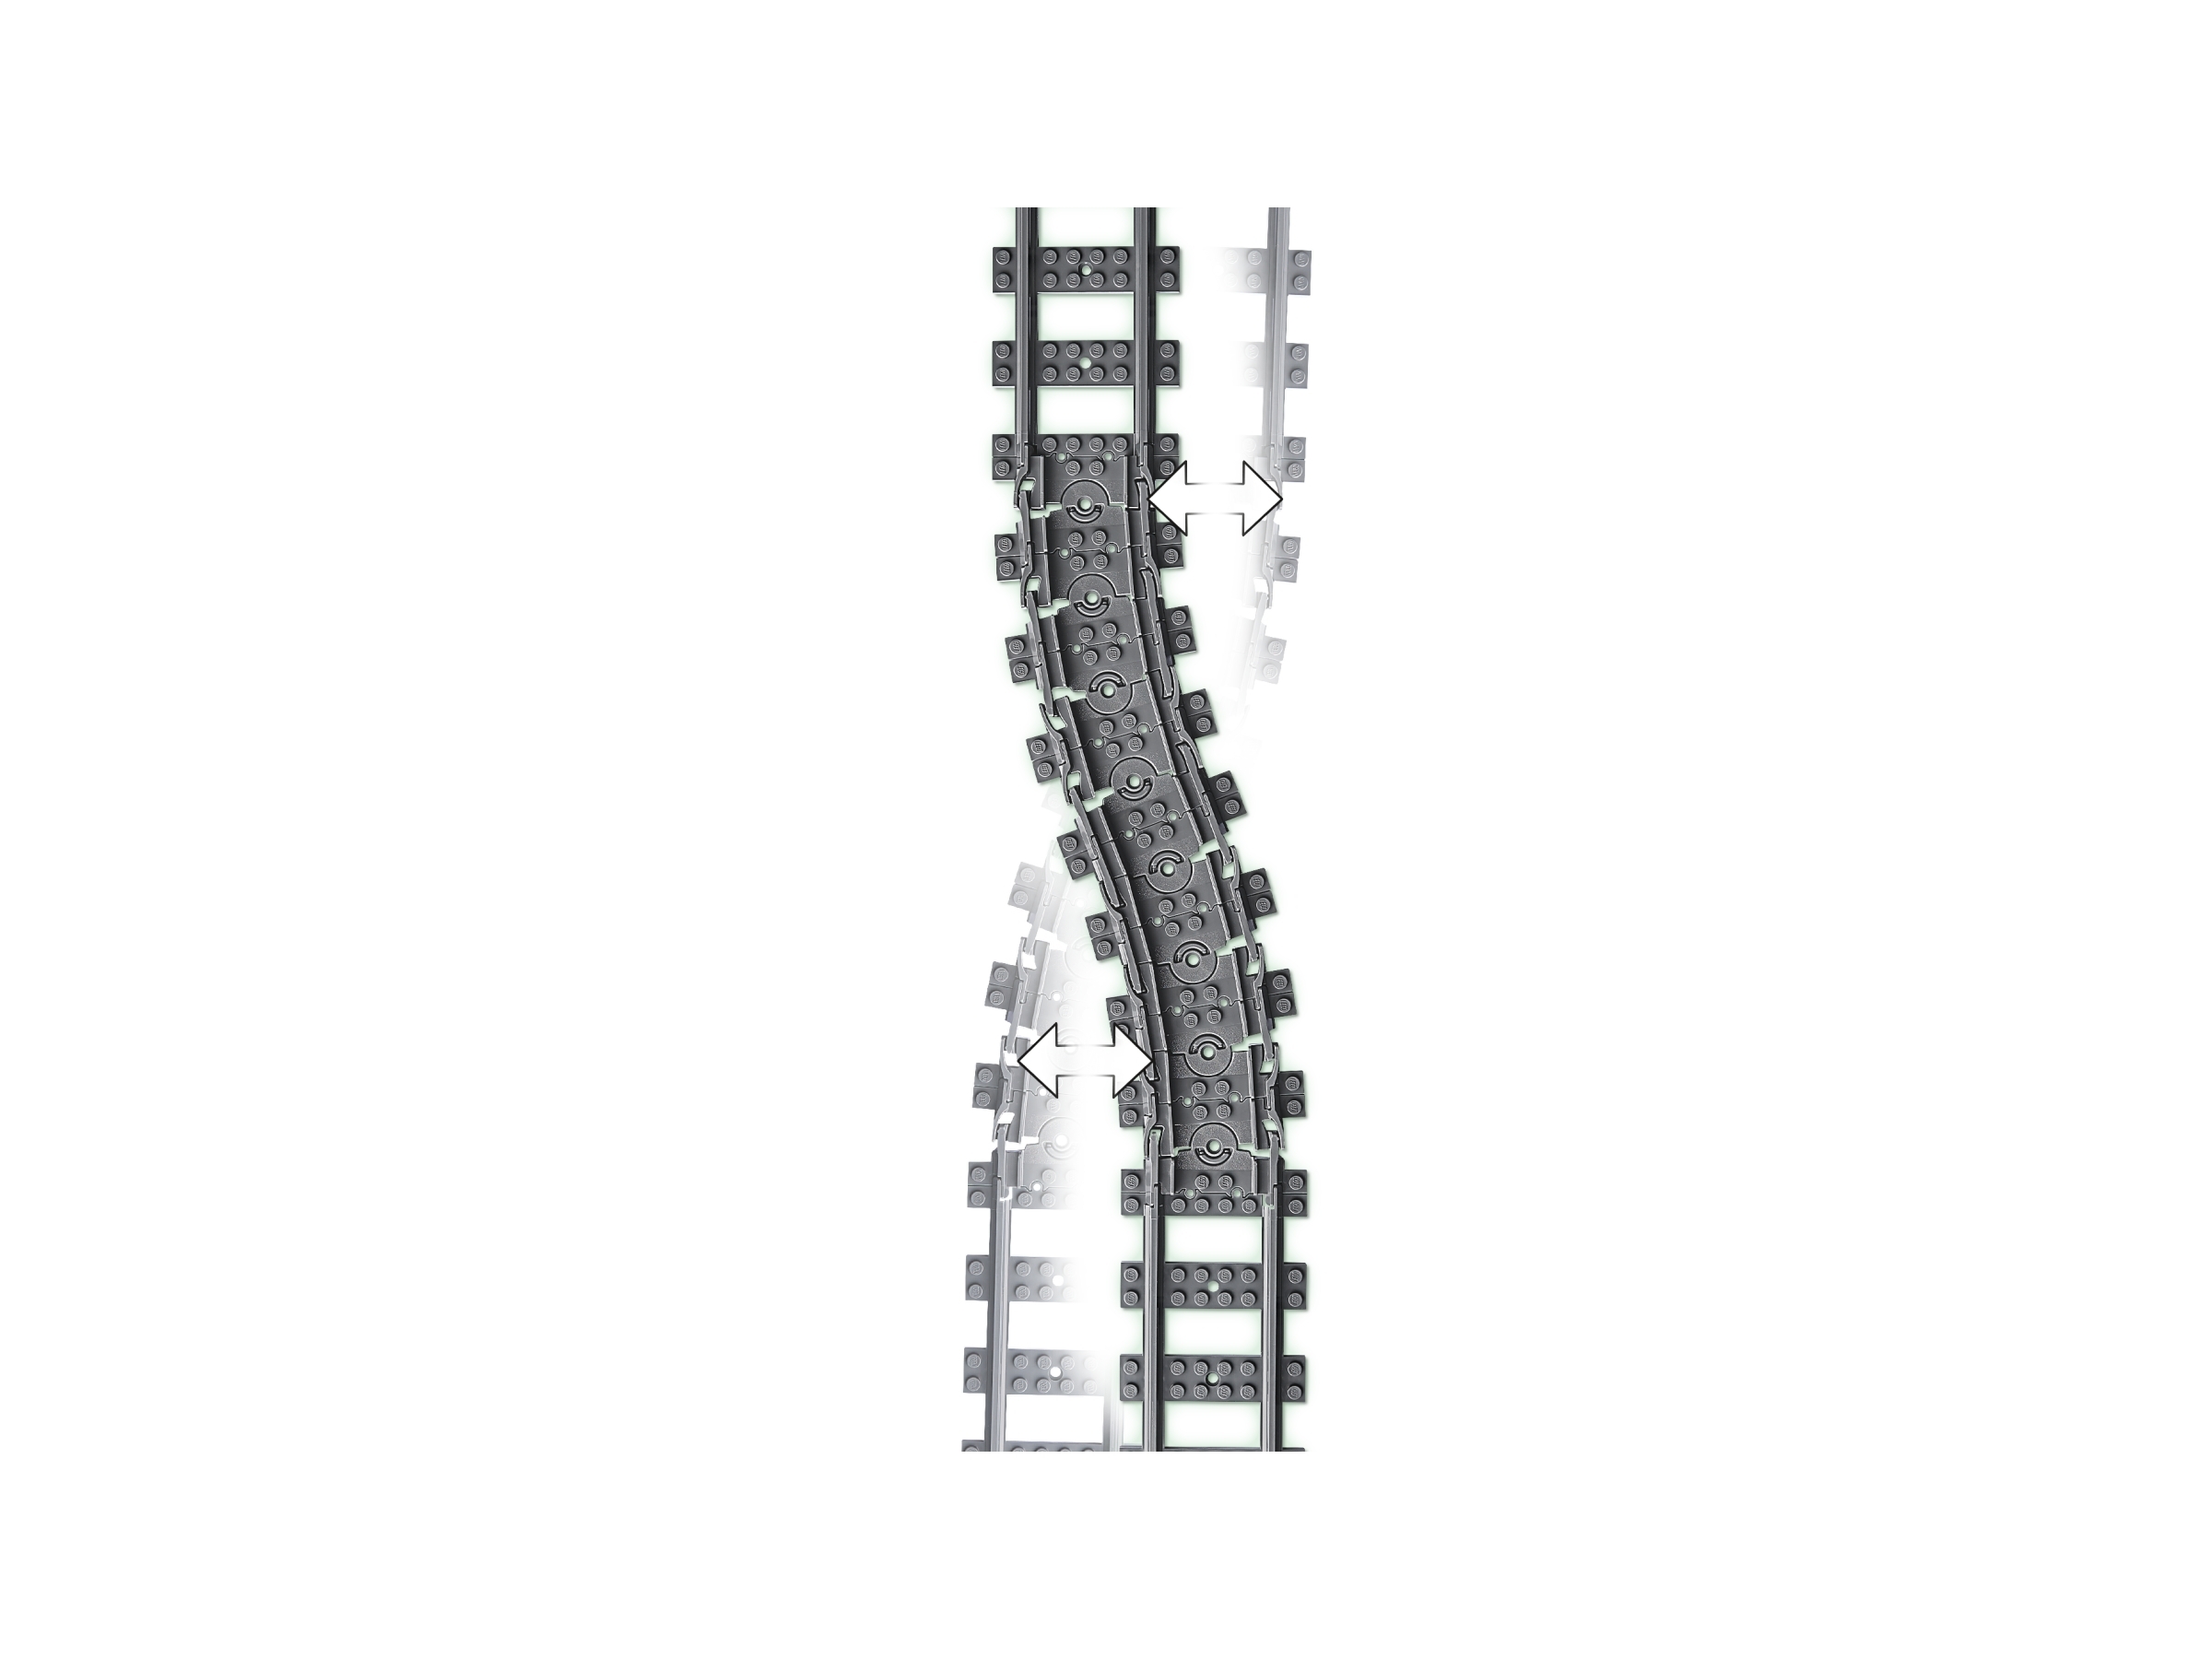 LEGO City 60205 pas cher, Pack de rails